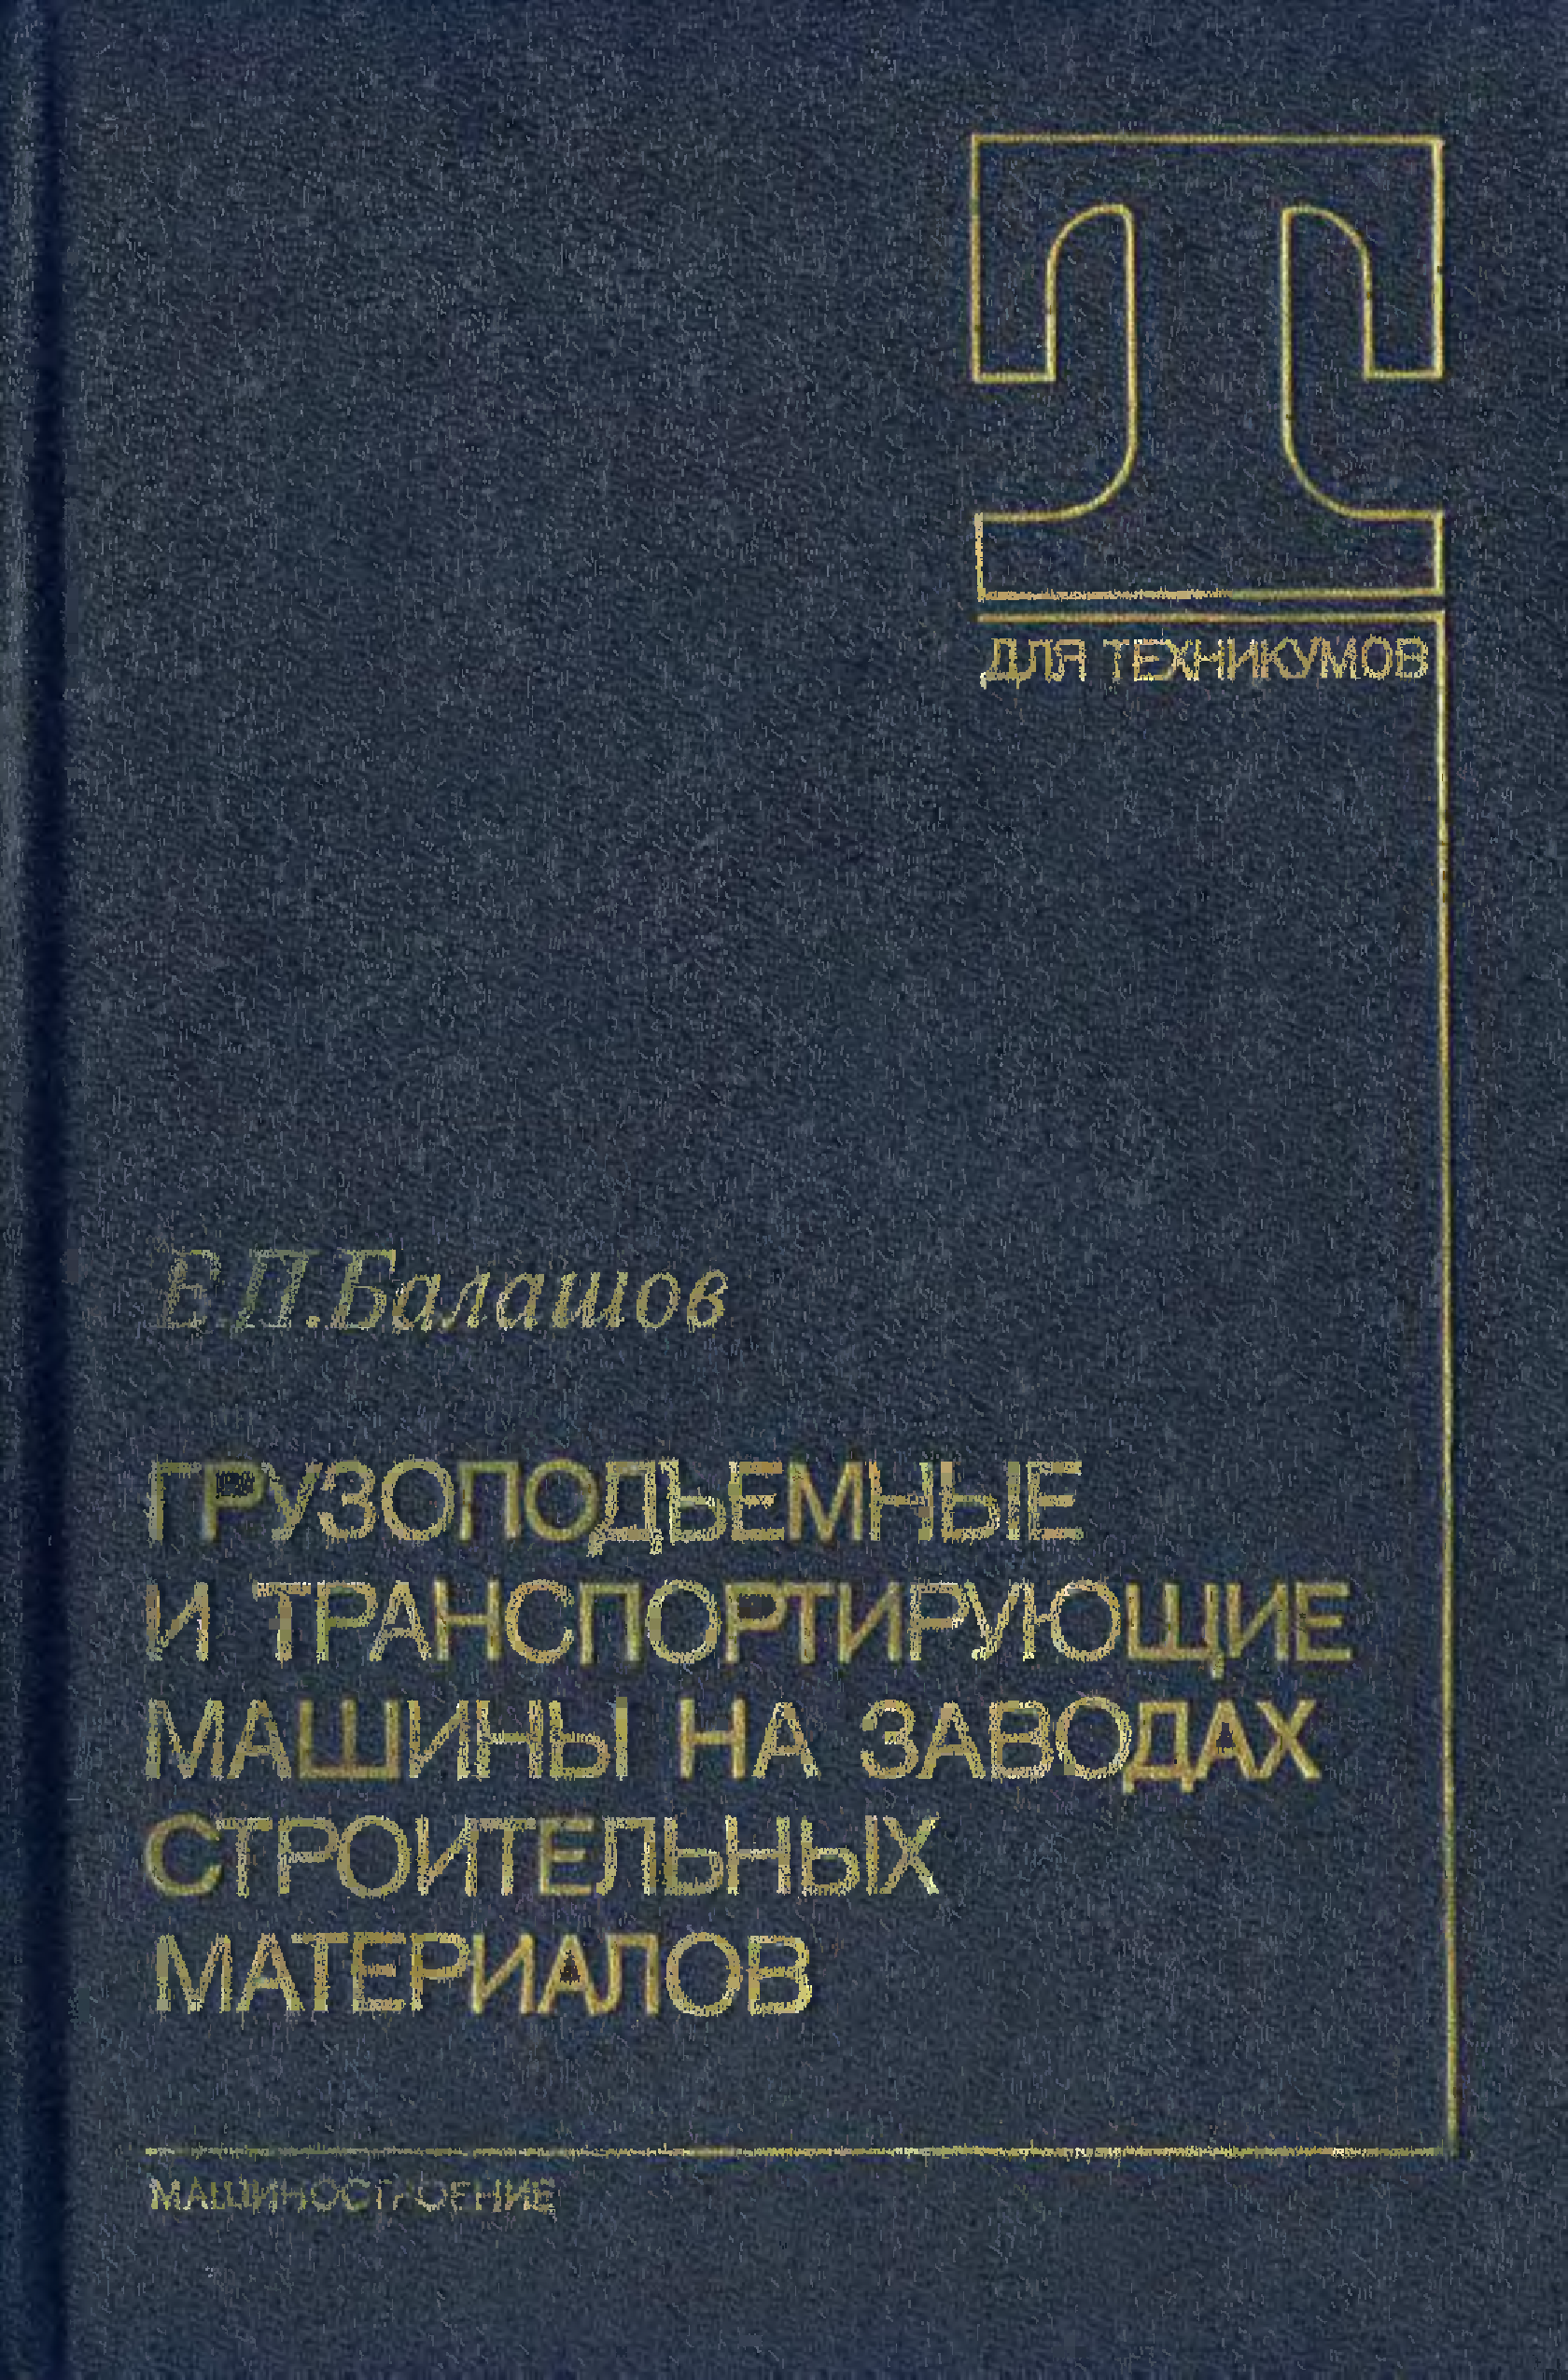 Учебник По Криминалистики Балашова 2009Г.